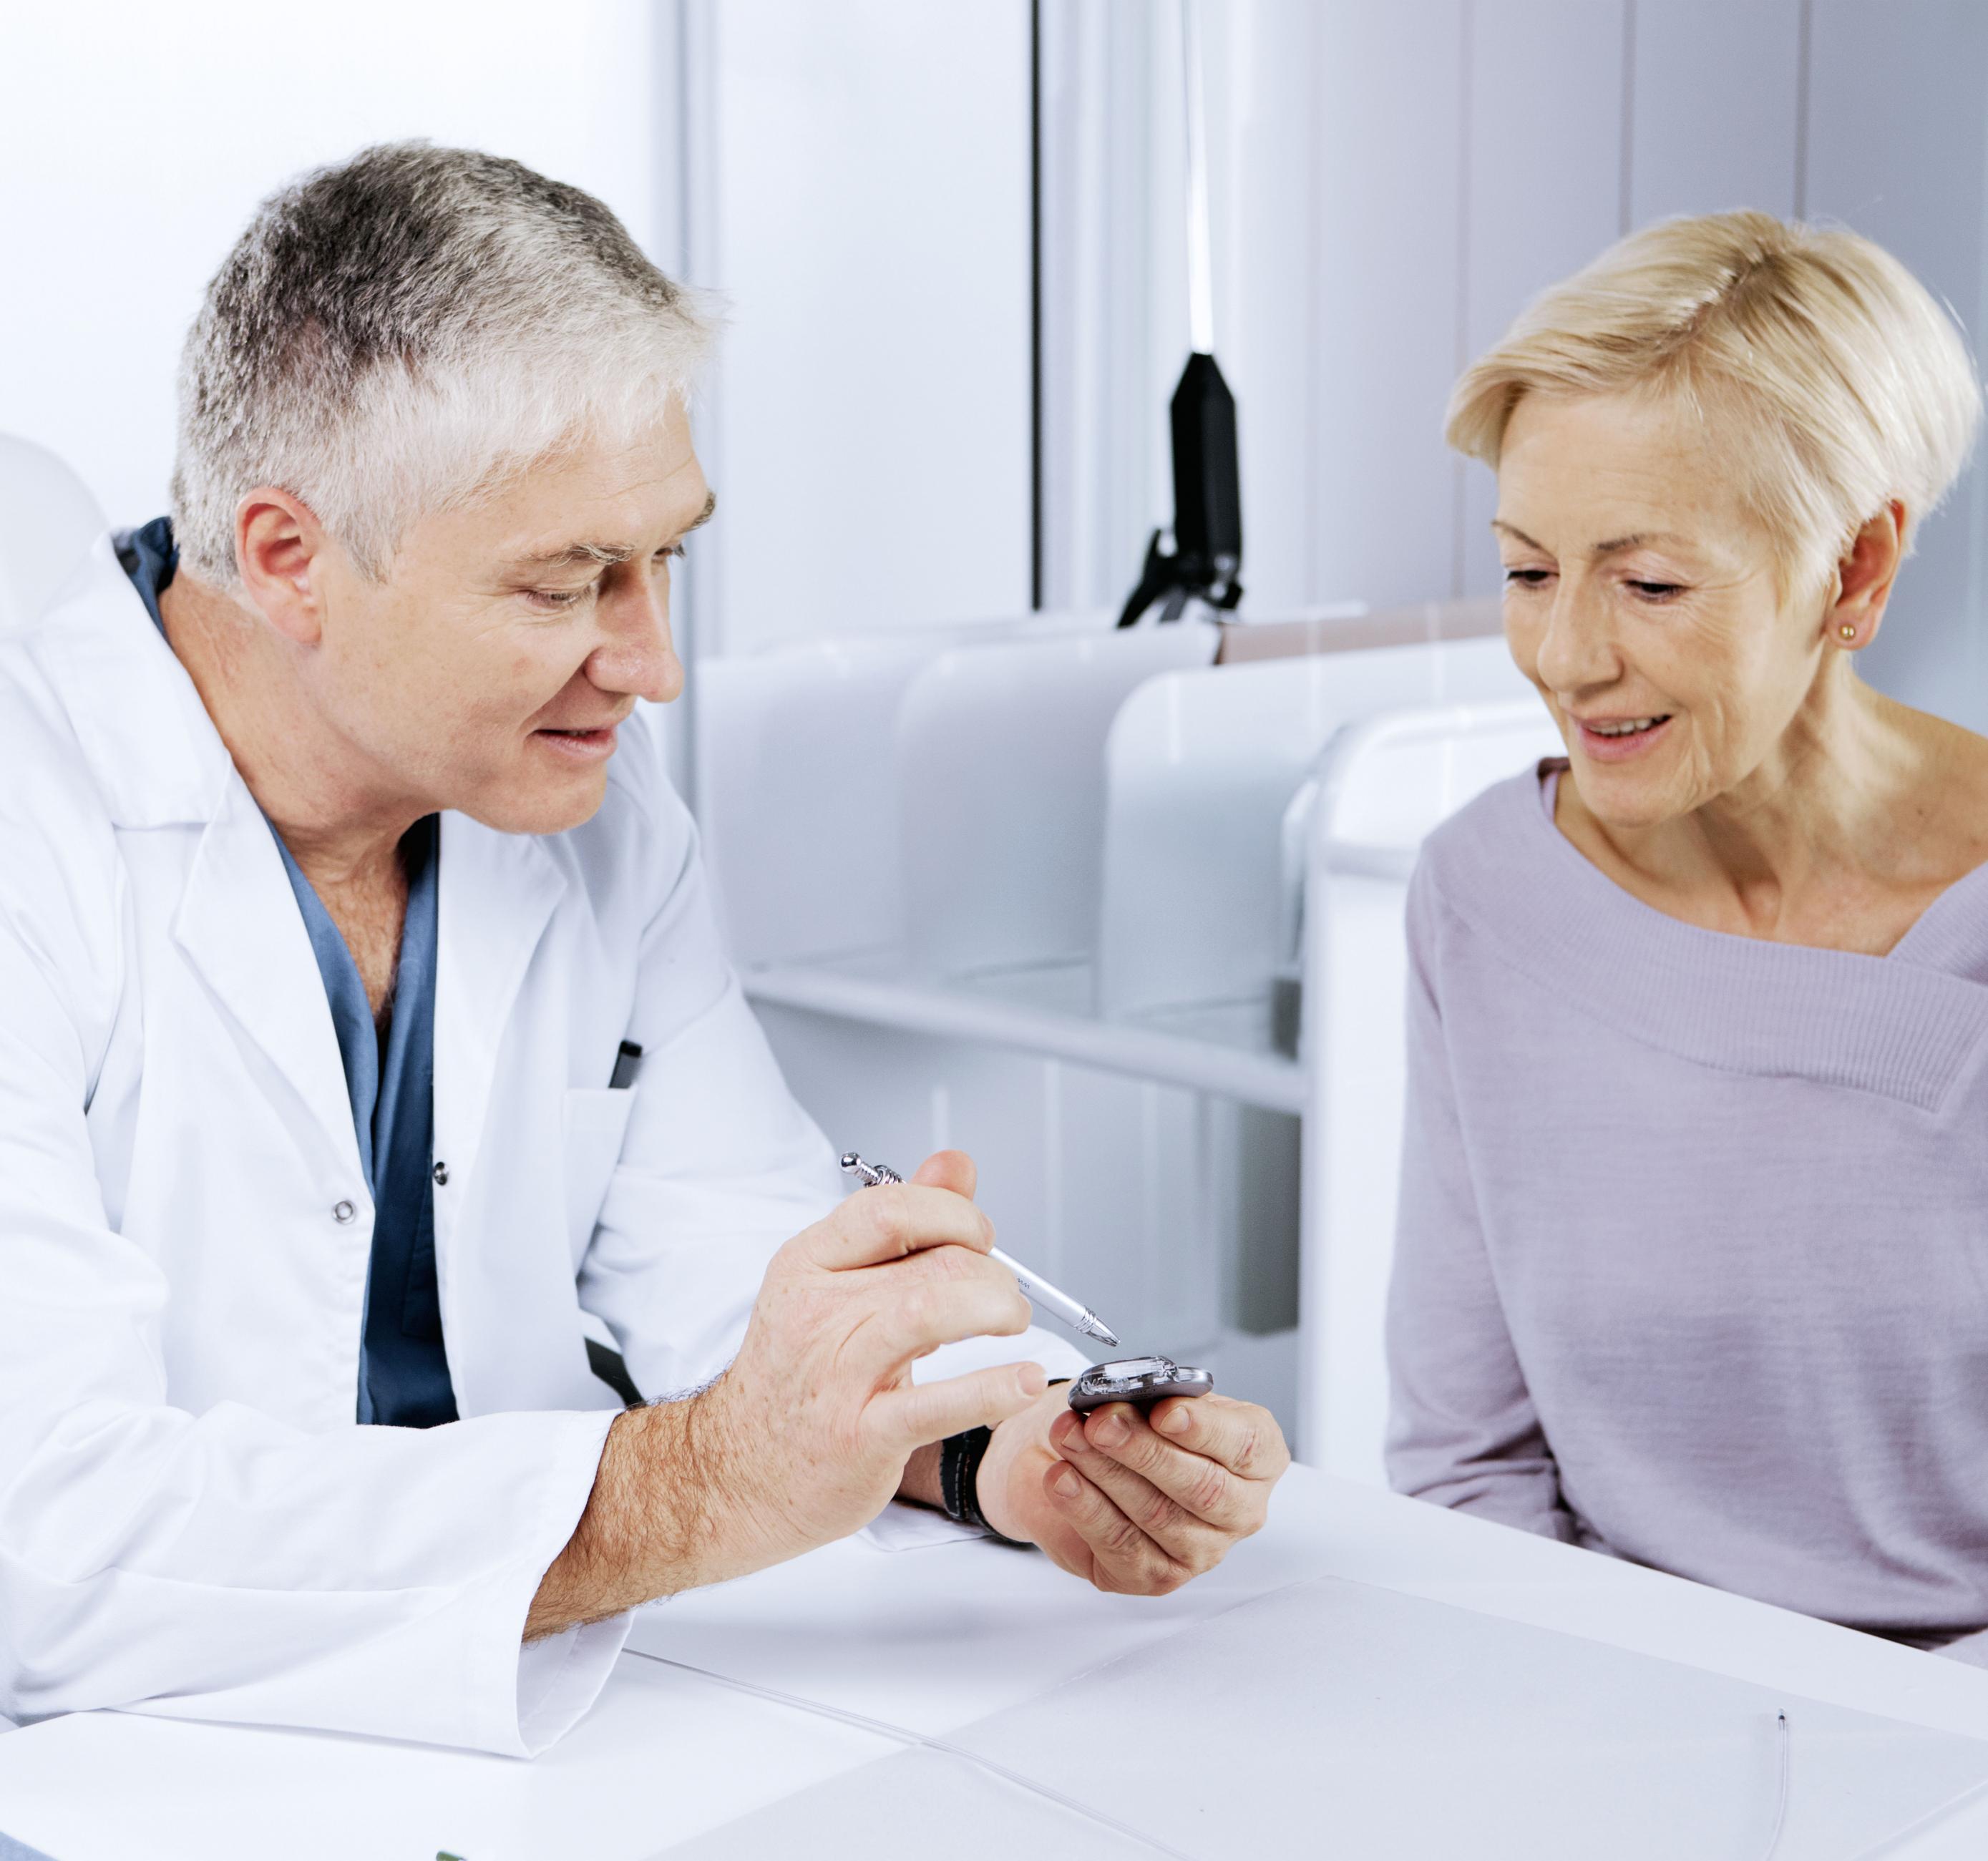 Na imagem, há um médico e uma mulher sentados próximos, em um consultório. Ele está mostrando um dispositivo para ela, que observa atentamente.